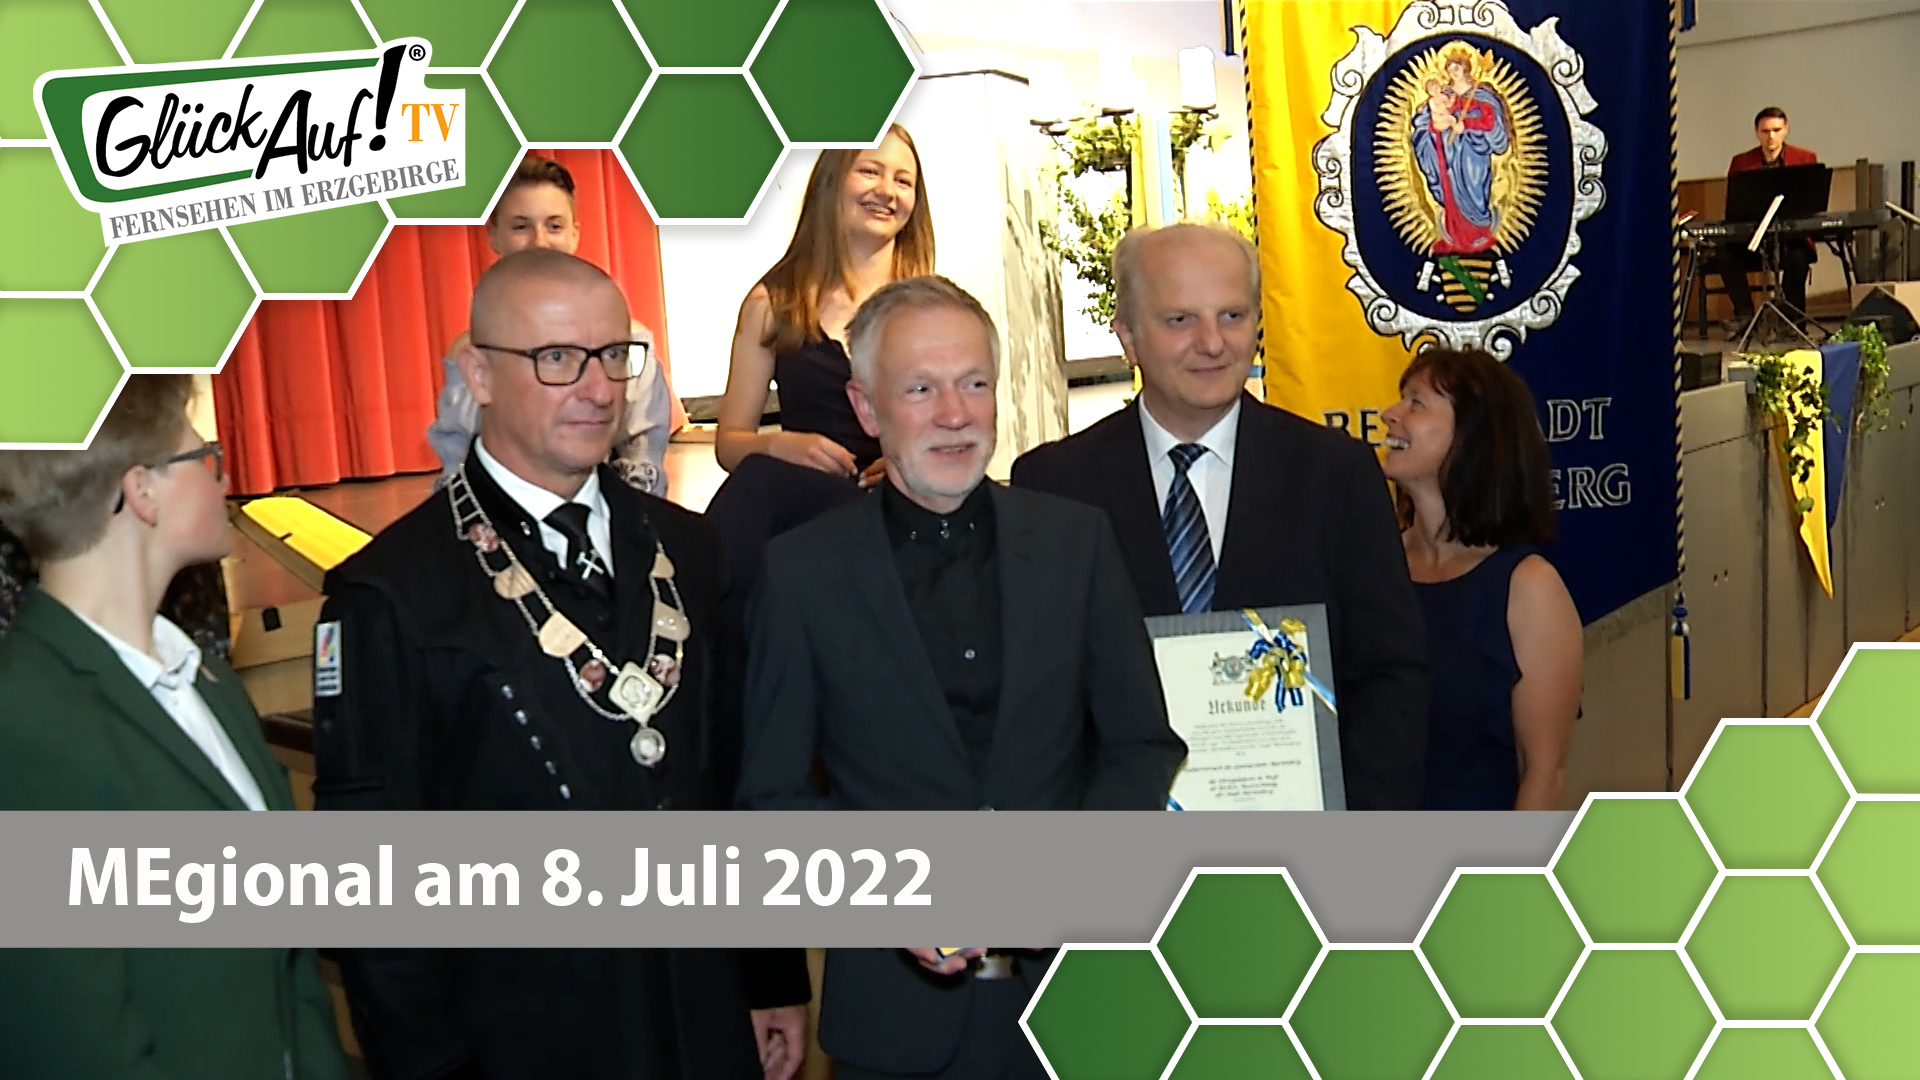 MEgional am 8. Juli 2022 - mit der Ehrenplakette der Stadt Marienberg für den Kulturversuch